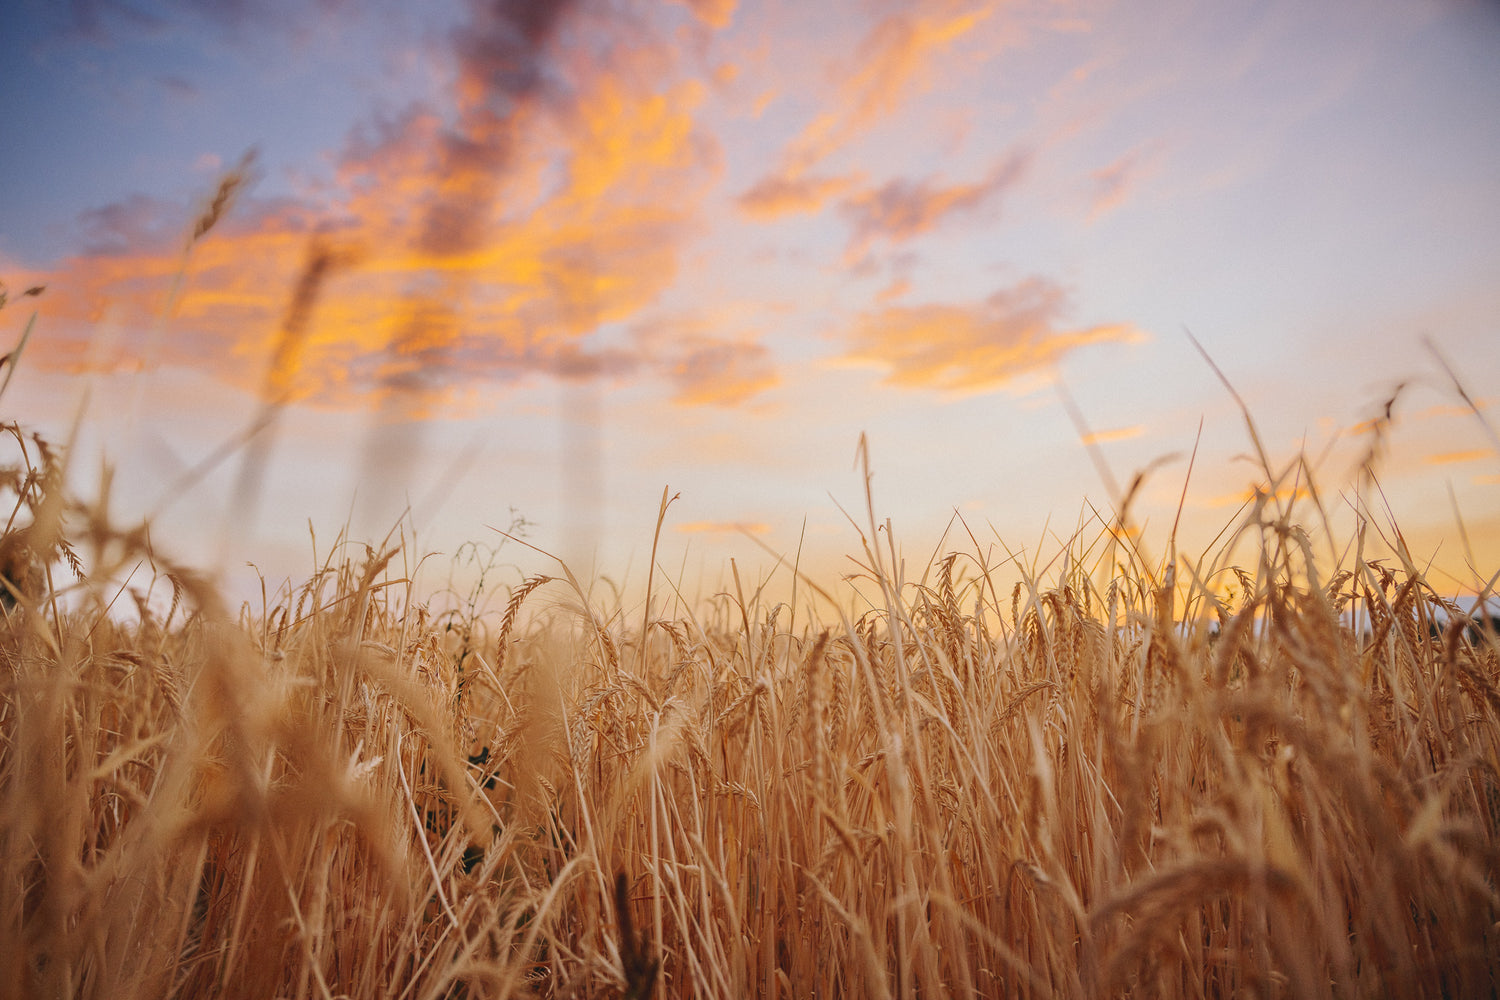 Francin barley against a lavender and orange sunset. Francin barley is grown in La Grande, Oregon